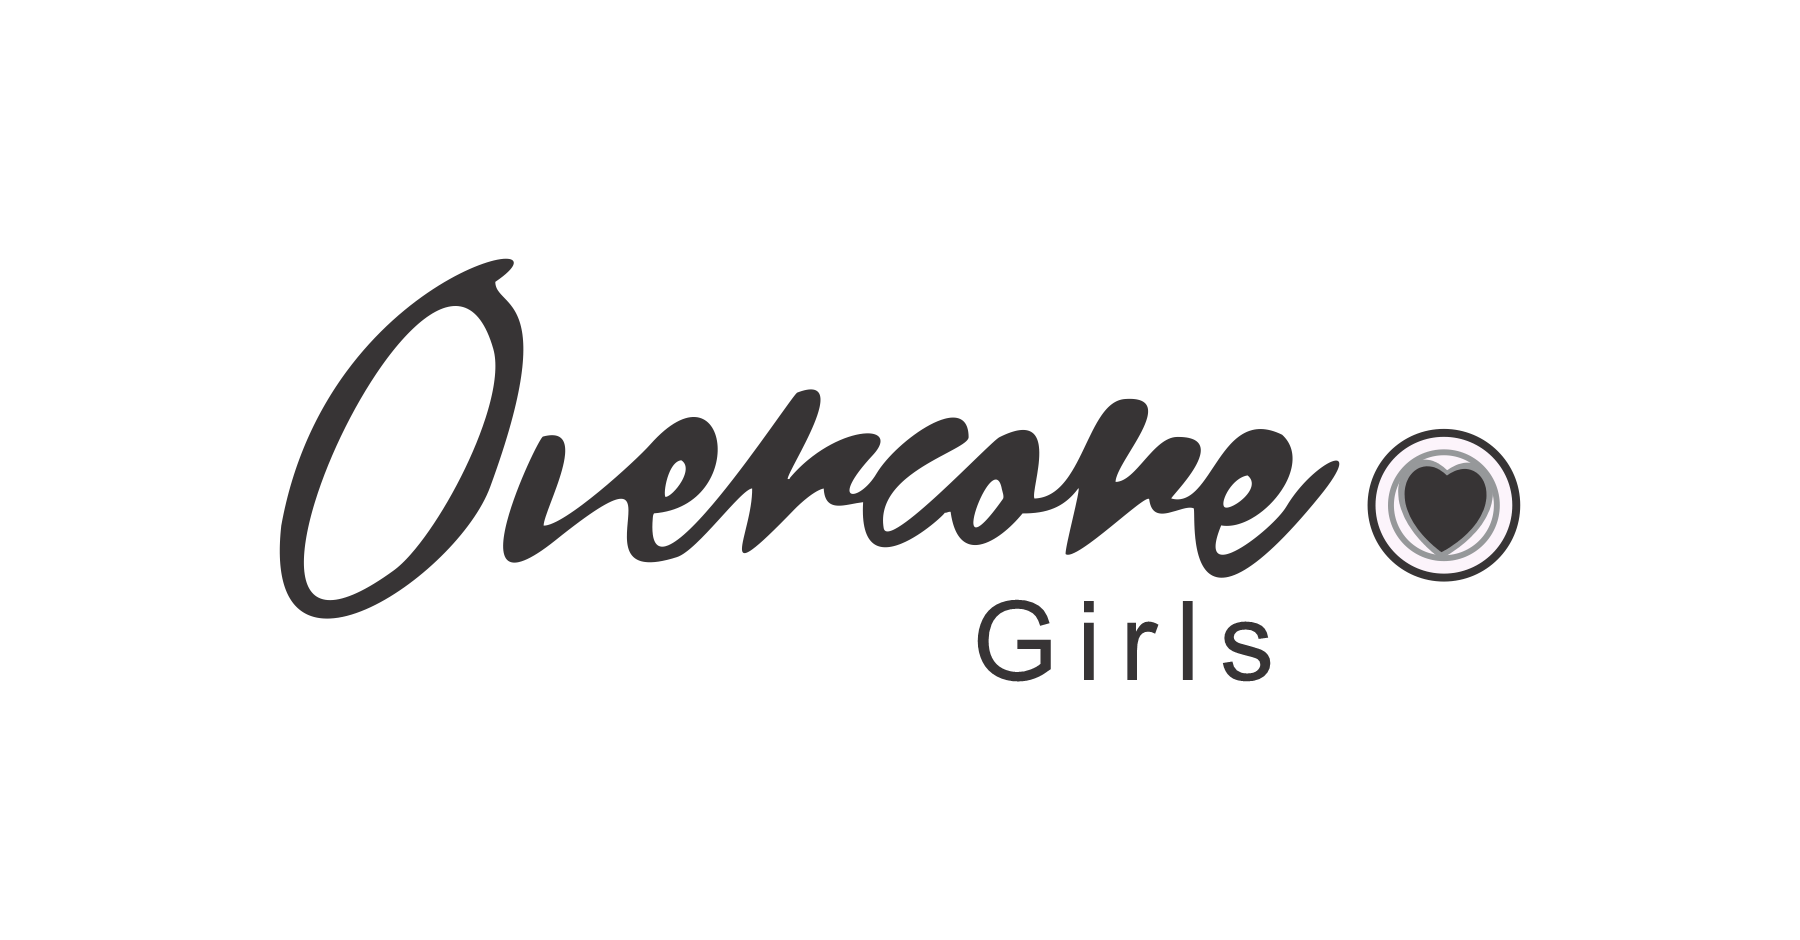 OVERCORE GIRLS : Brand Short Description Type Here.